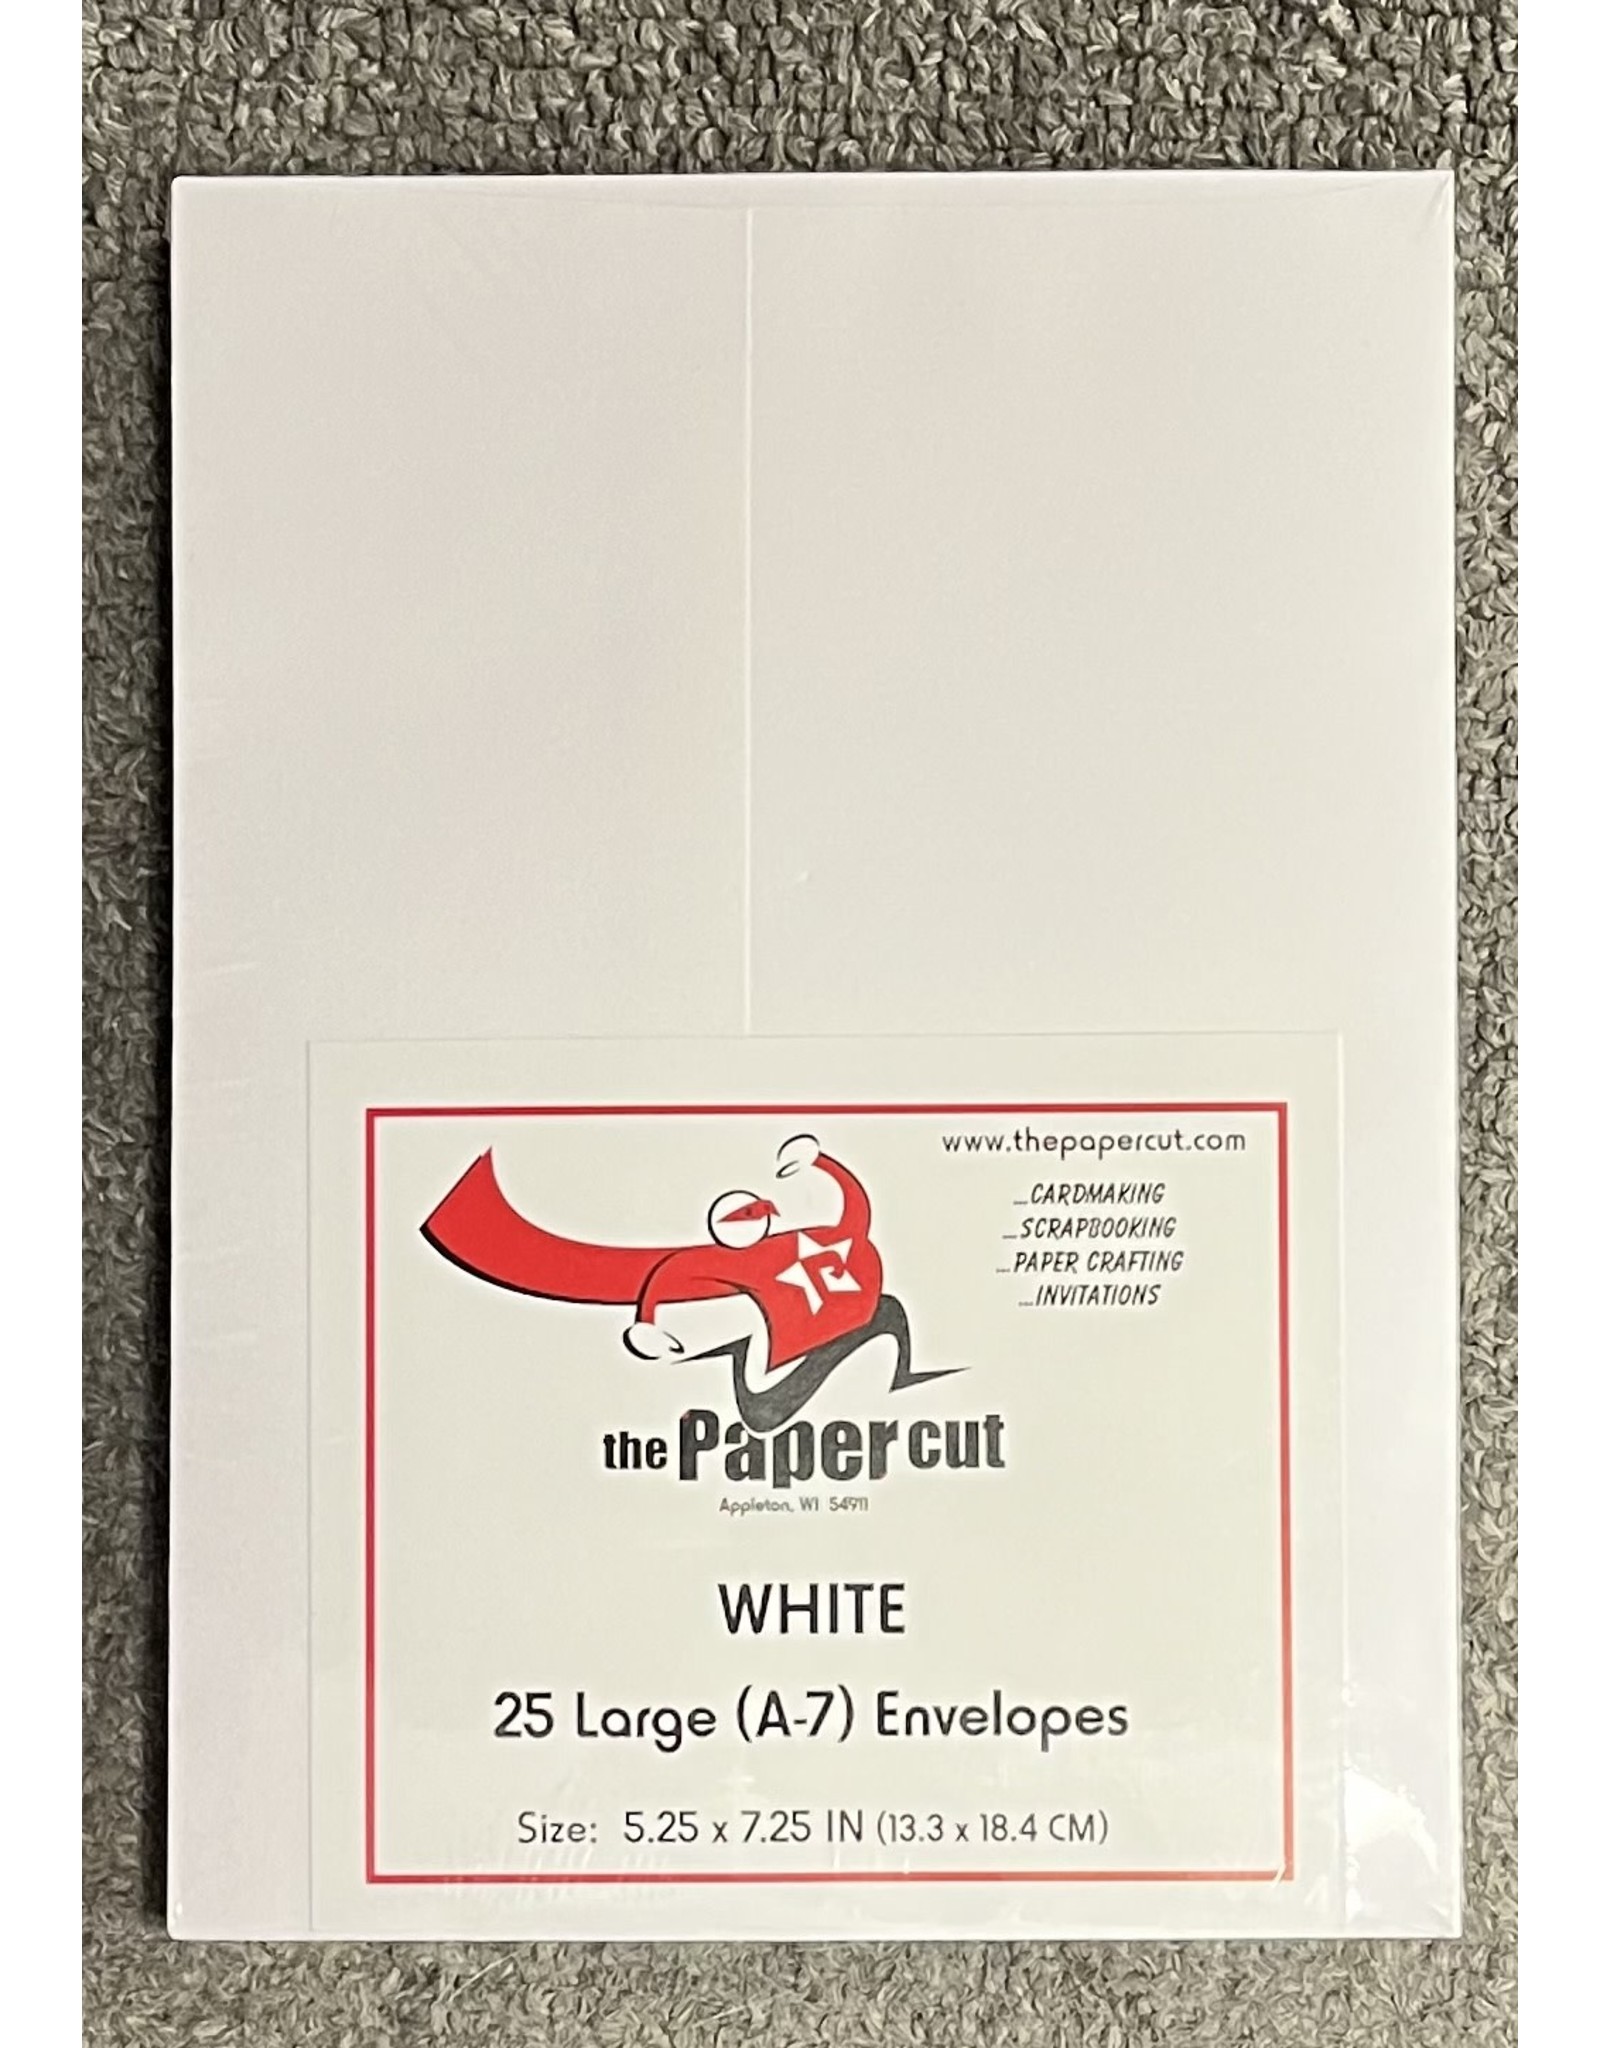 PAPER CUT THE PAPER CUT 25 A-7 LARGE WHITE ENVELOPES